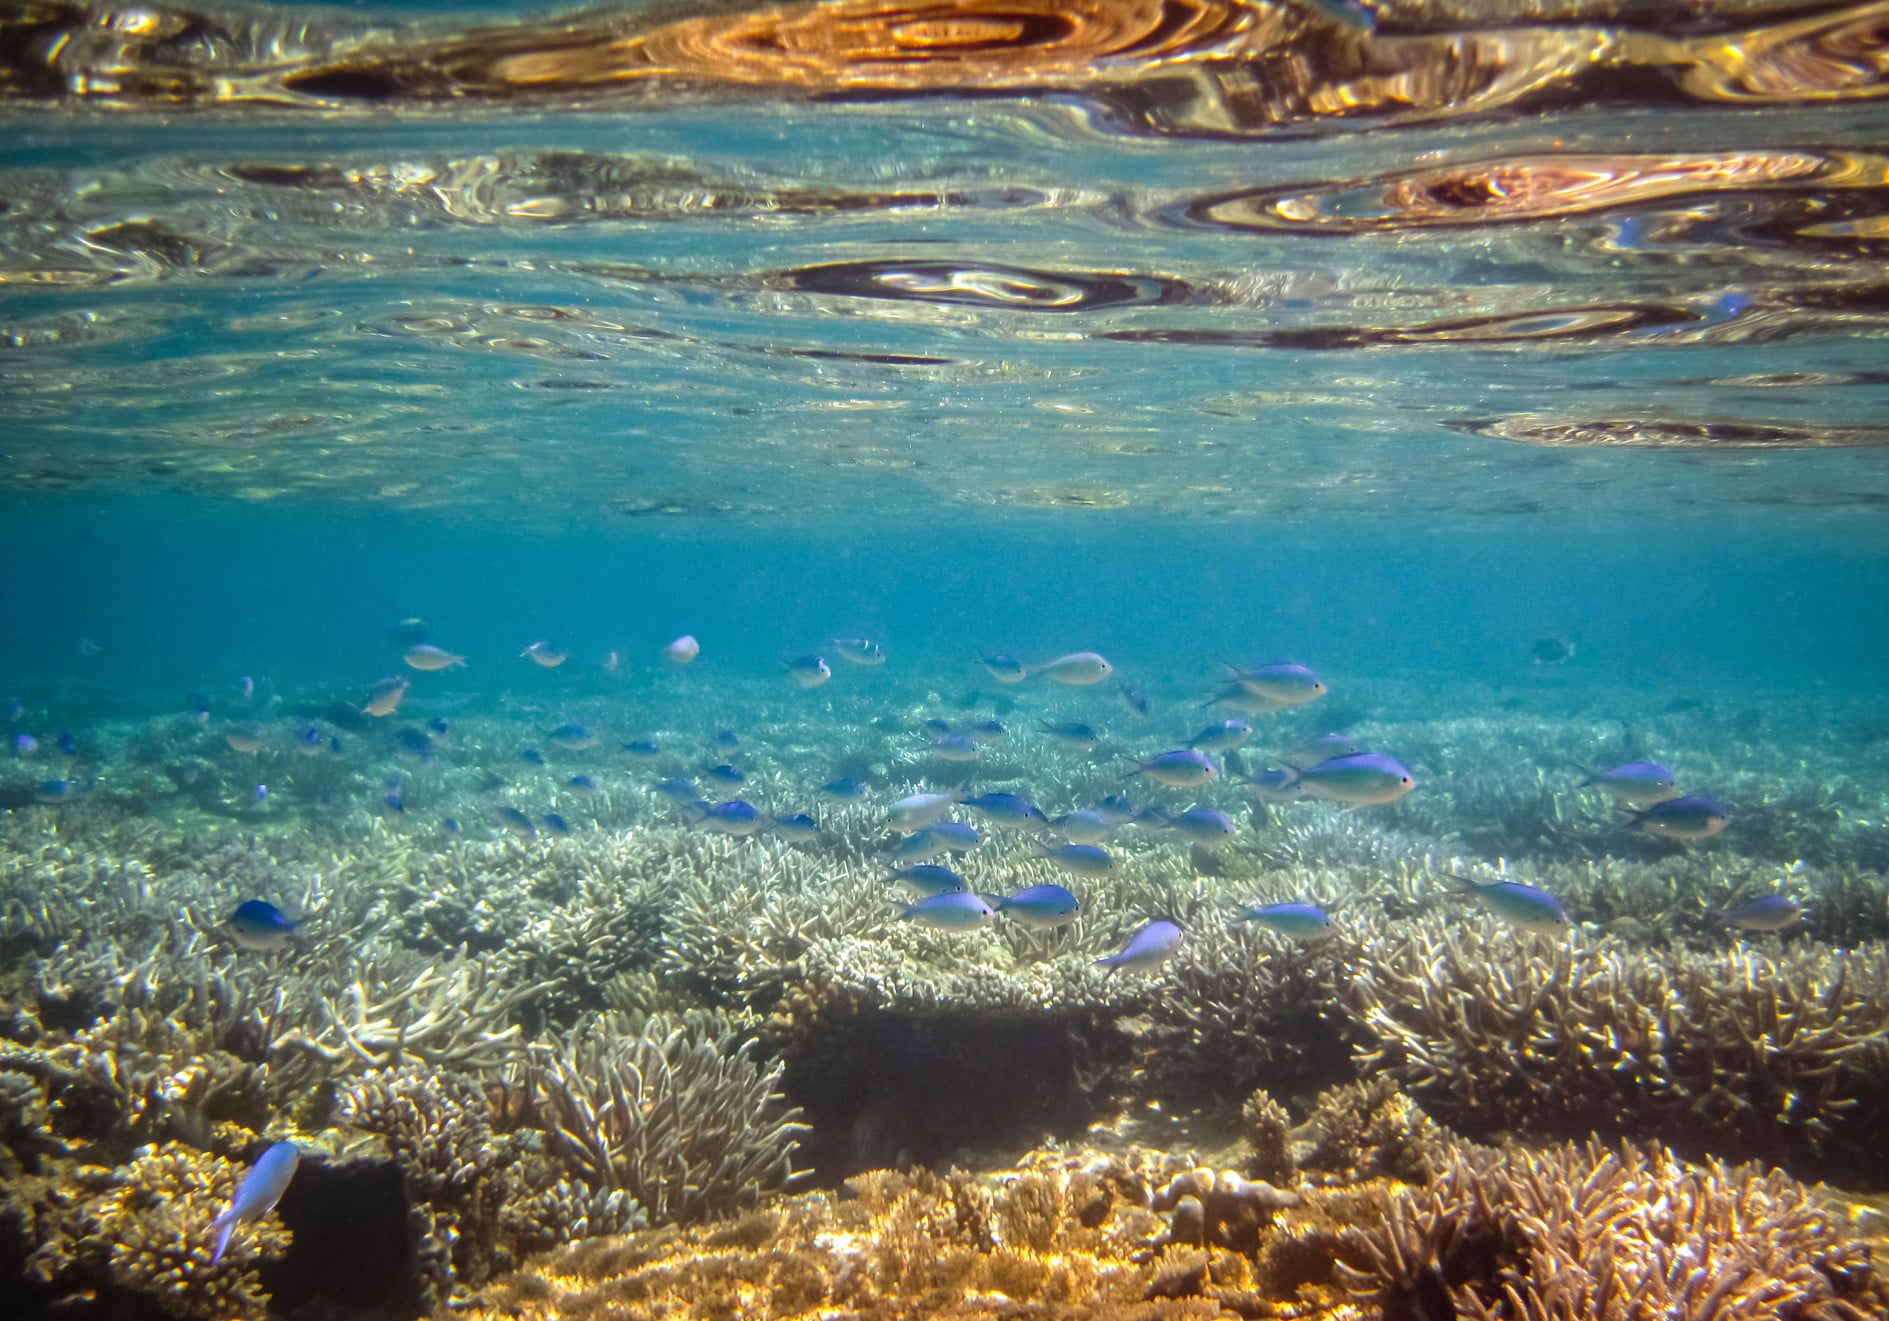 coral-water-colorful-fish-blue-marine-tropical-background-sea-ocean-underwater-reef-beautiful-deep_t20_4eaayx